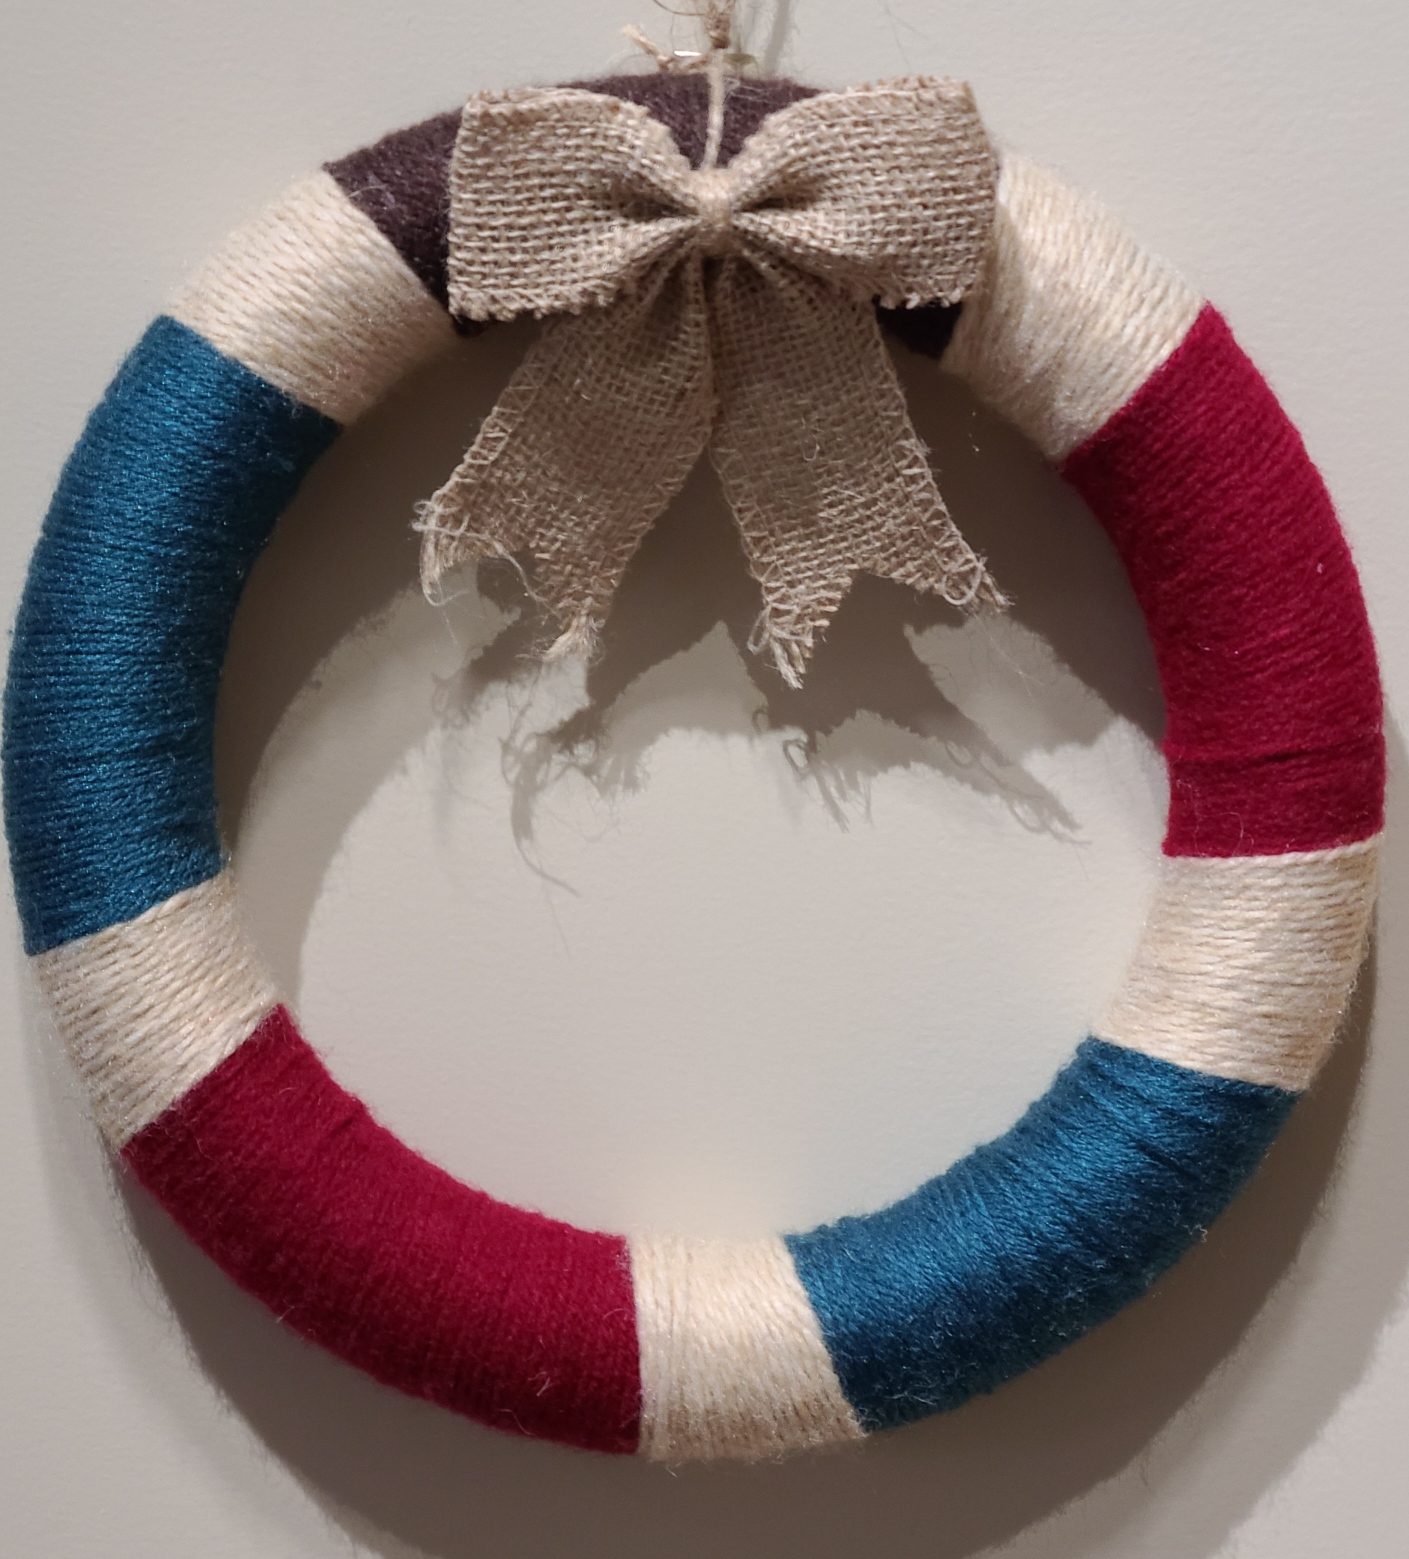 Yarn Wrapped Wreath